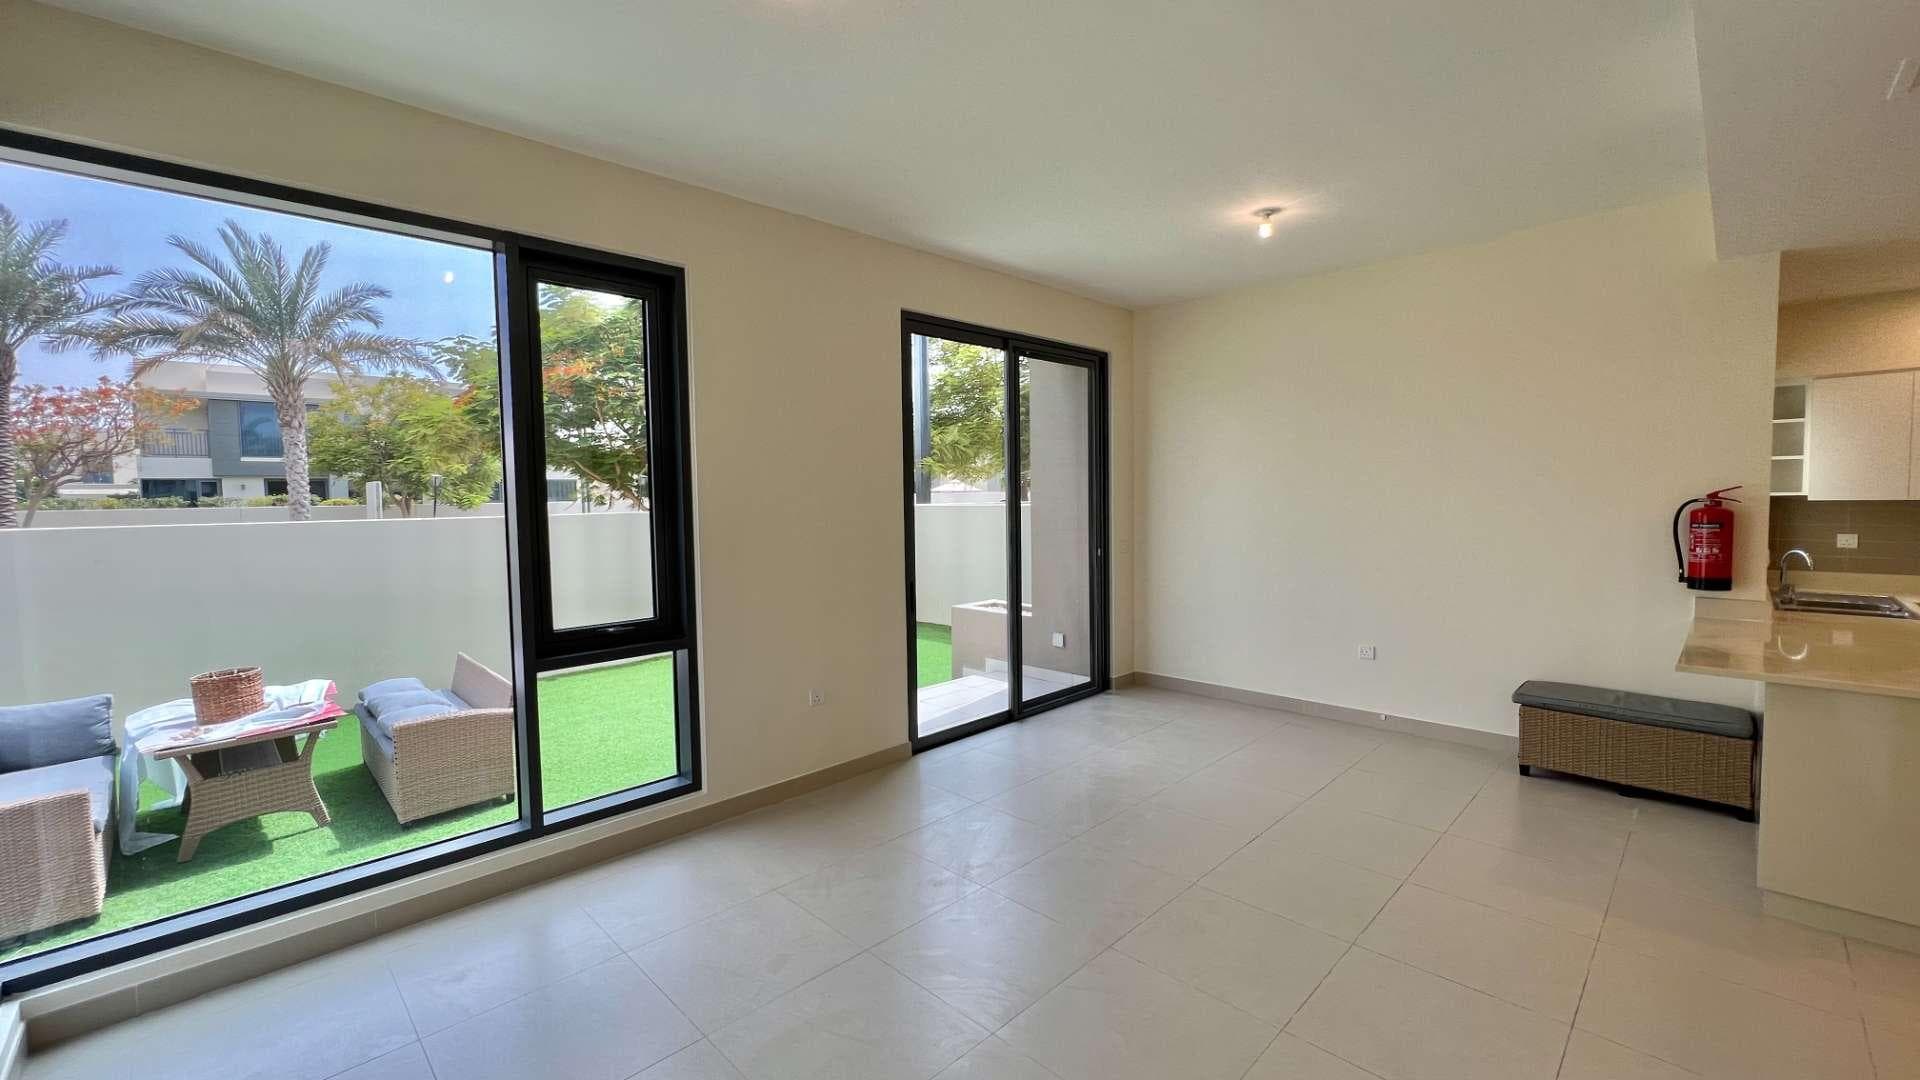 4 Bedroom Villa For Rent Maple At Dubai Hills Estate Lp34638 2f679de642d28600.jpg